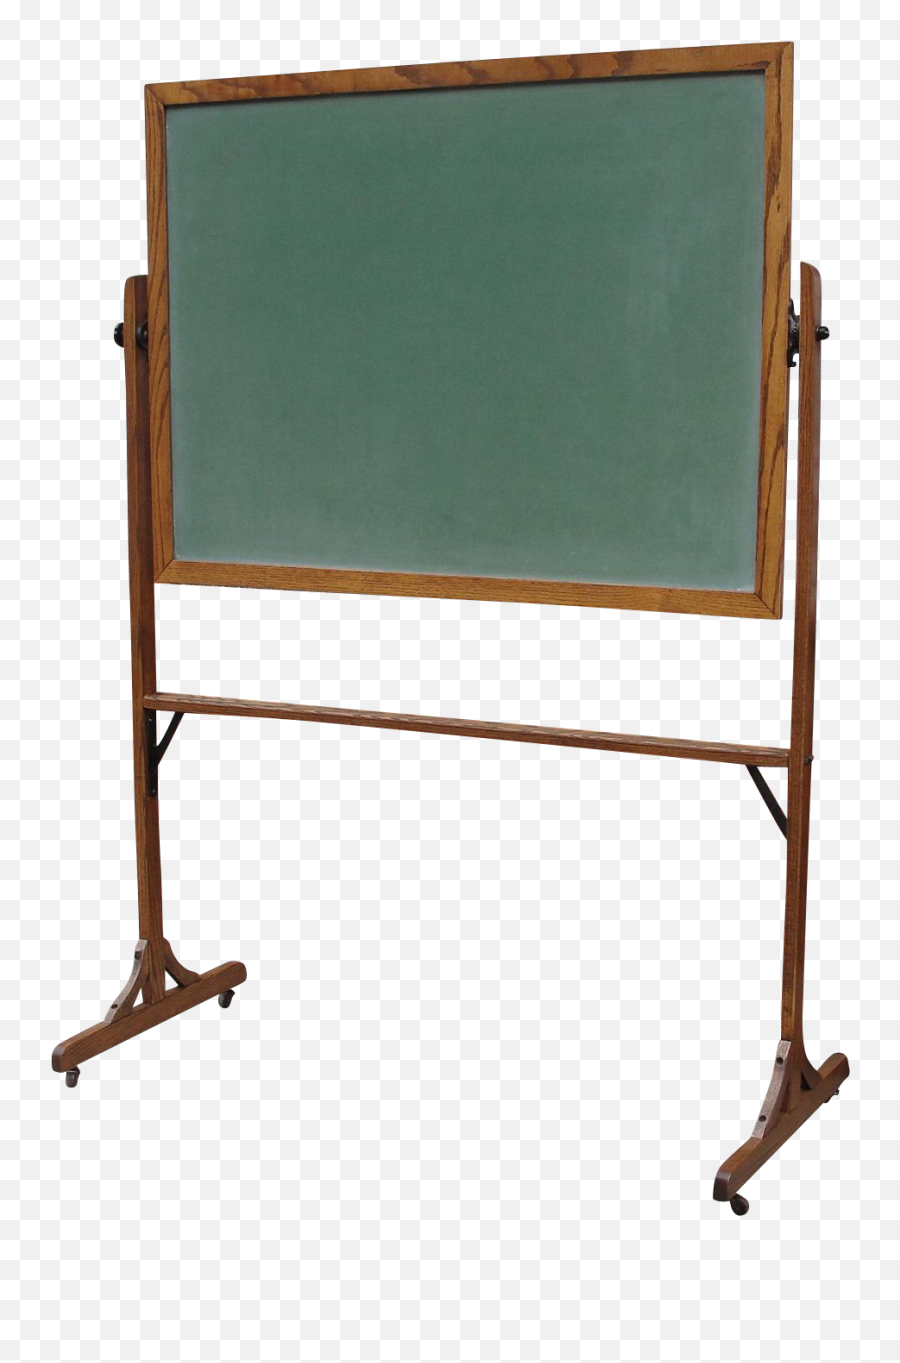 Chalkboard Transparent Standing - Transparent Standing Board Png,Chalk Board Png